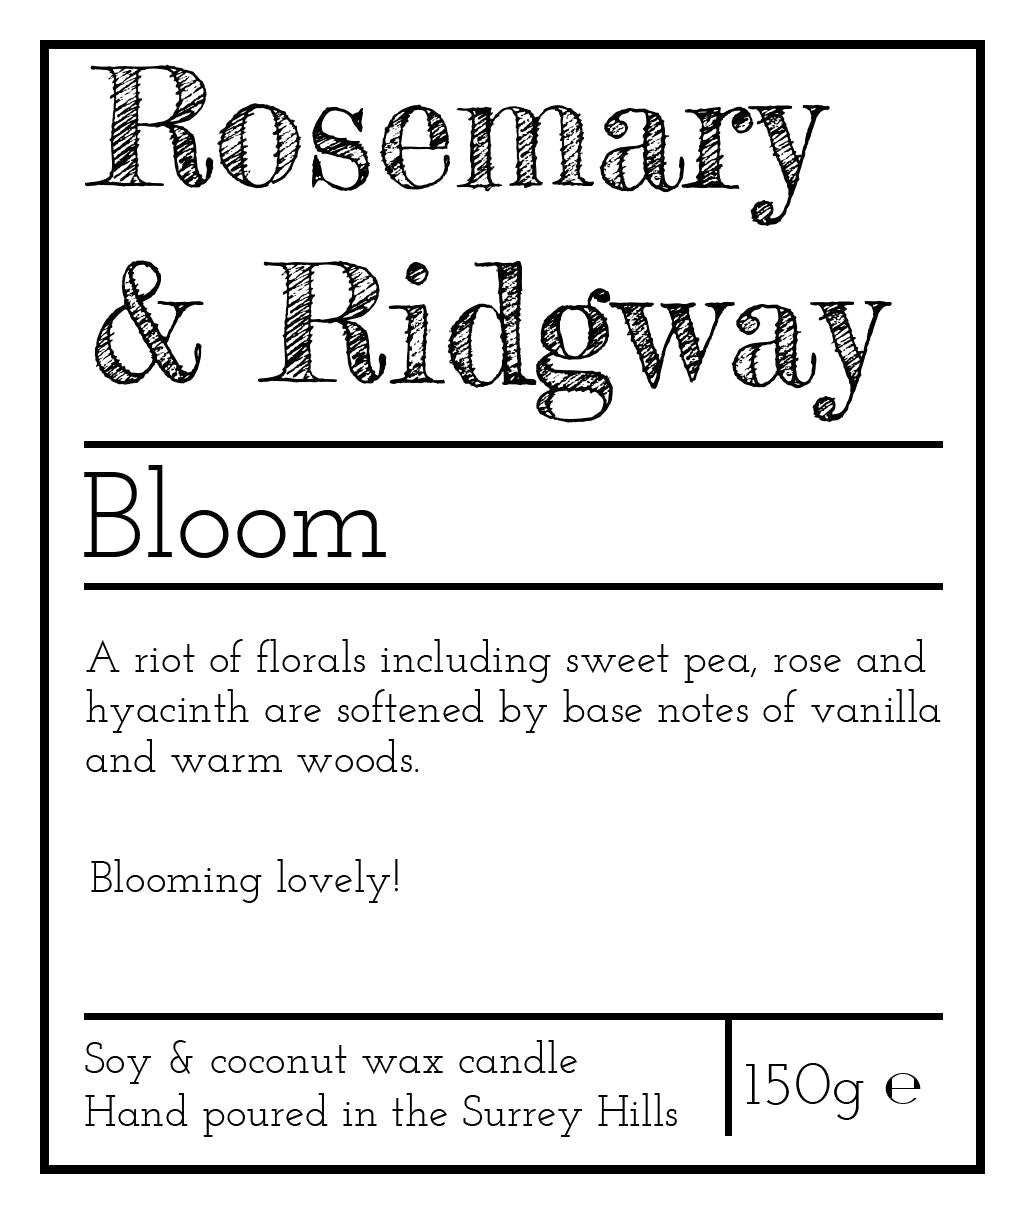 Bloom Rosemary & Ridgway